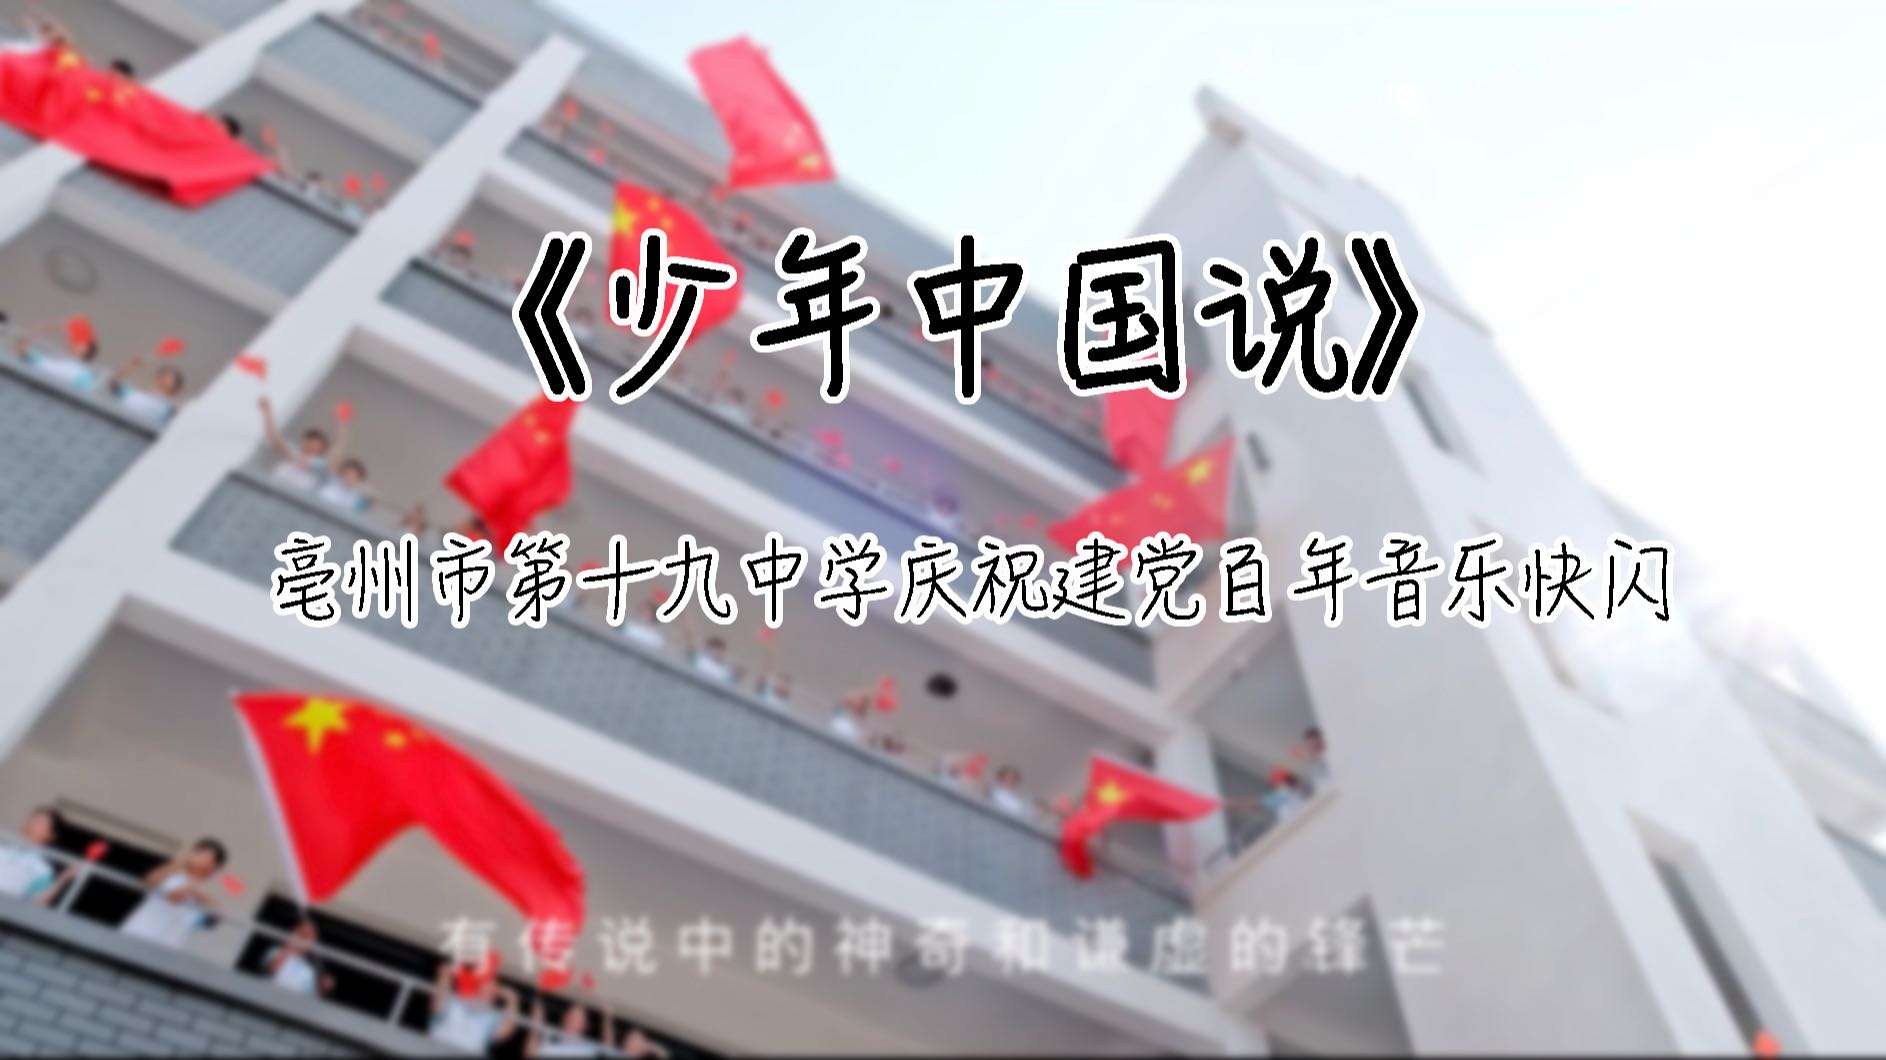 亳州市第十九中学庆祝建党百年快闪——《少年中国说》